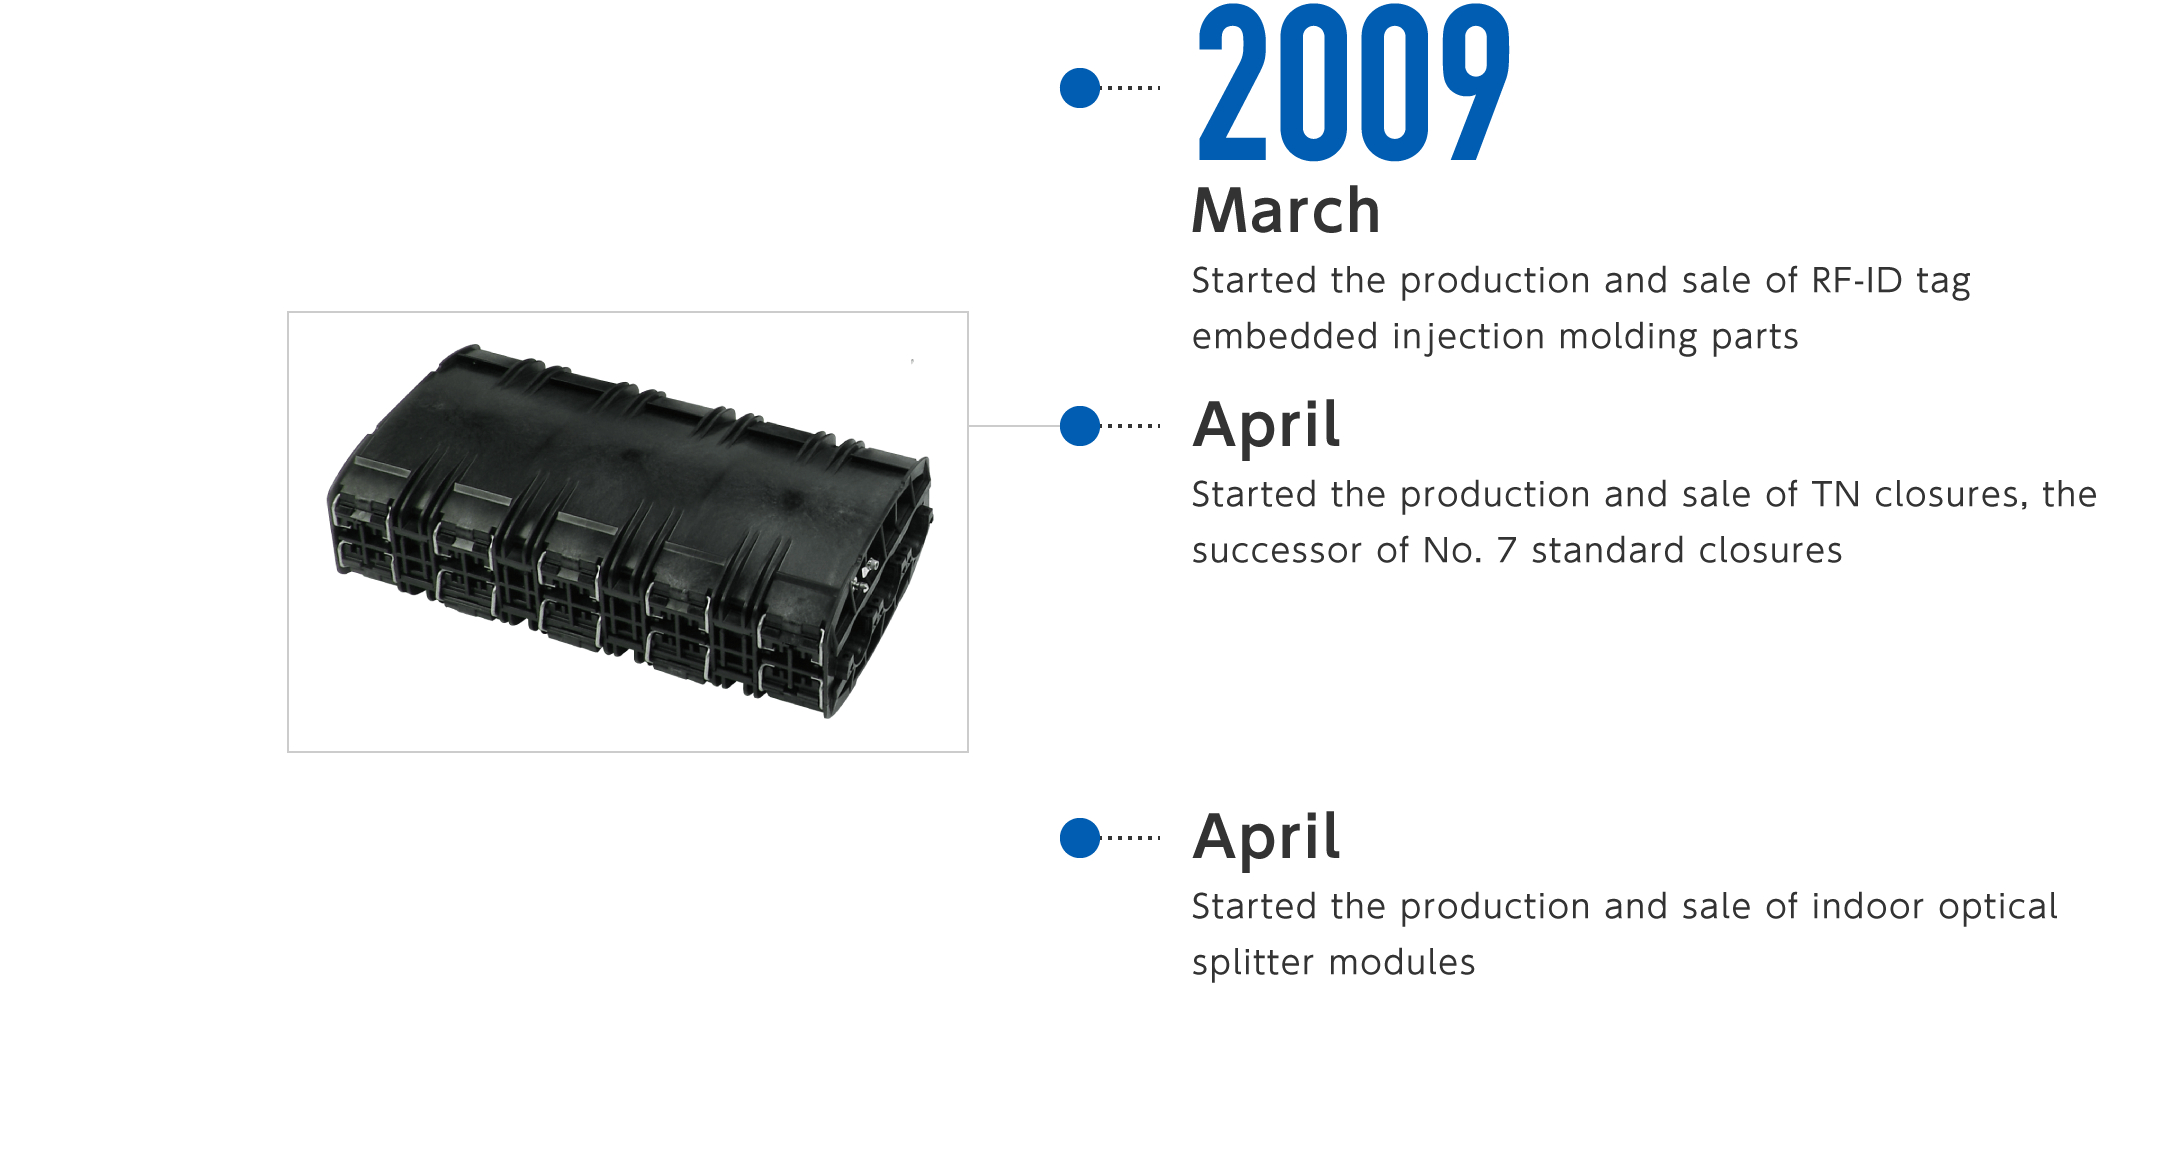 2009年3月-RF-IDタグ内蔵射出成形品の製造・販売を開始、4月-7号スタンダードクロージャの後継機種であるTNクロージャの製造・販売を開始、4月-構内用光スプリッタモジュールの製造・販売を開始